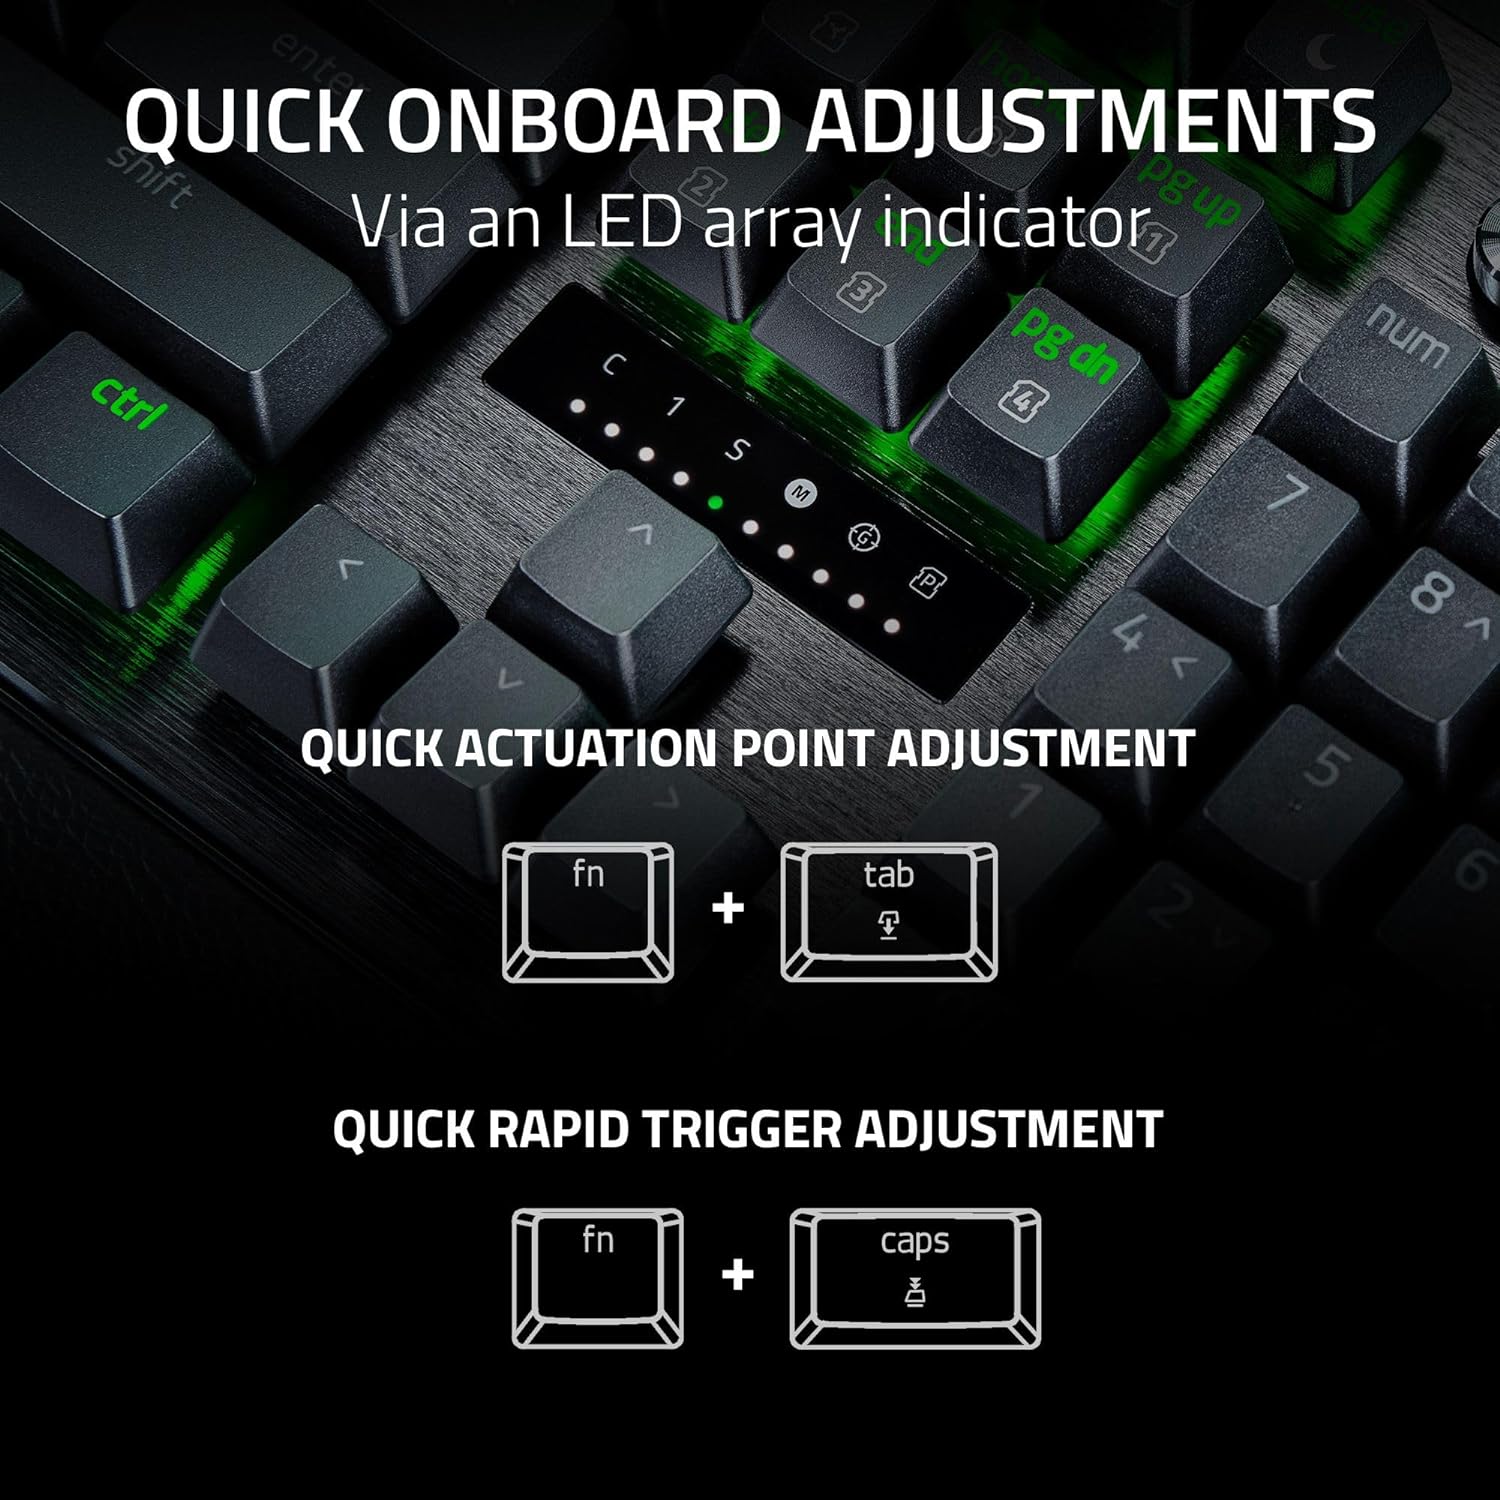 Bàn phím Razer Huntsman V3 Pro - Analog Optical Esports Keyboard_Mới, hàng chính hãng